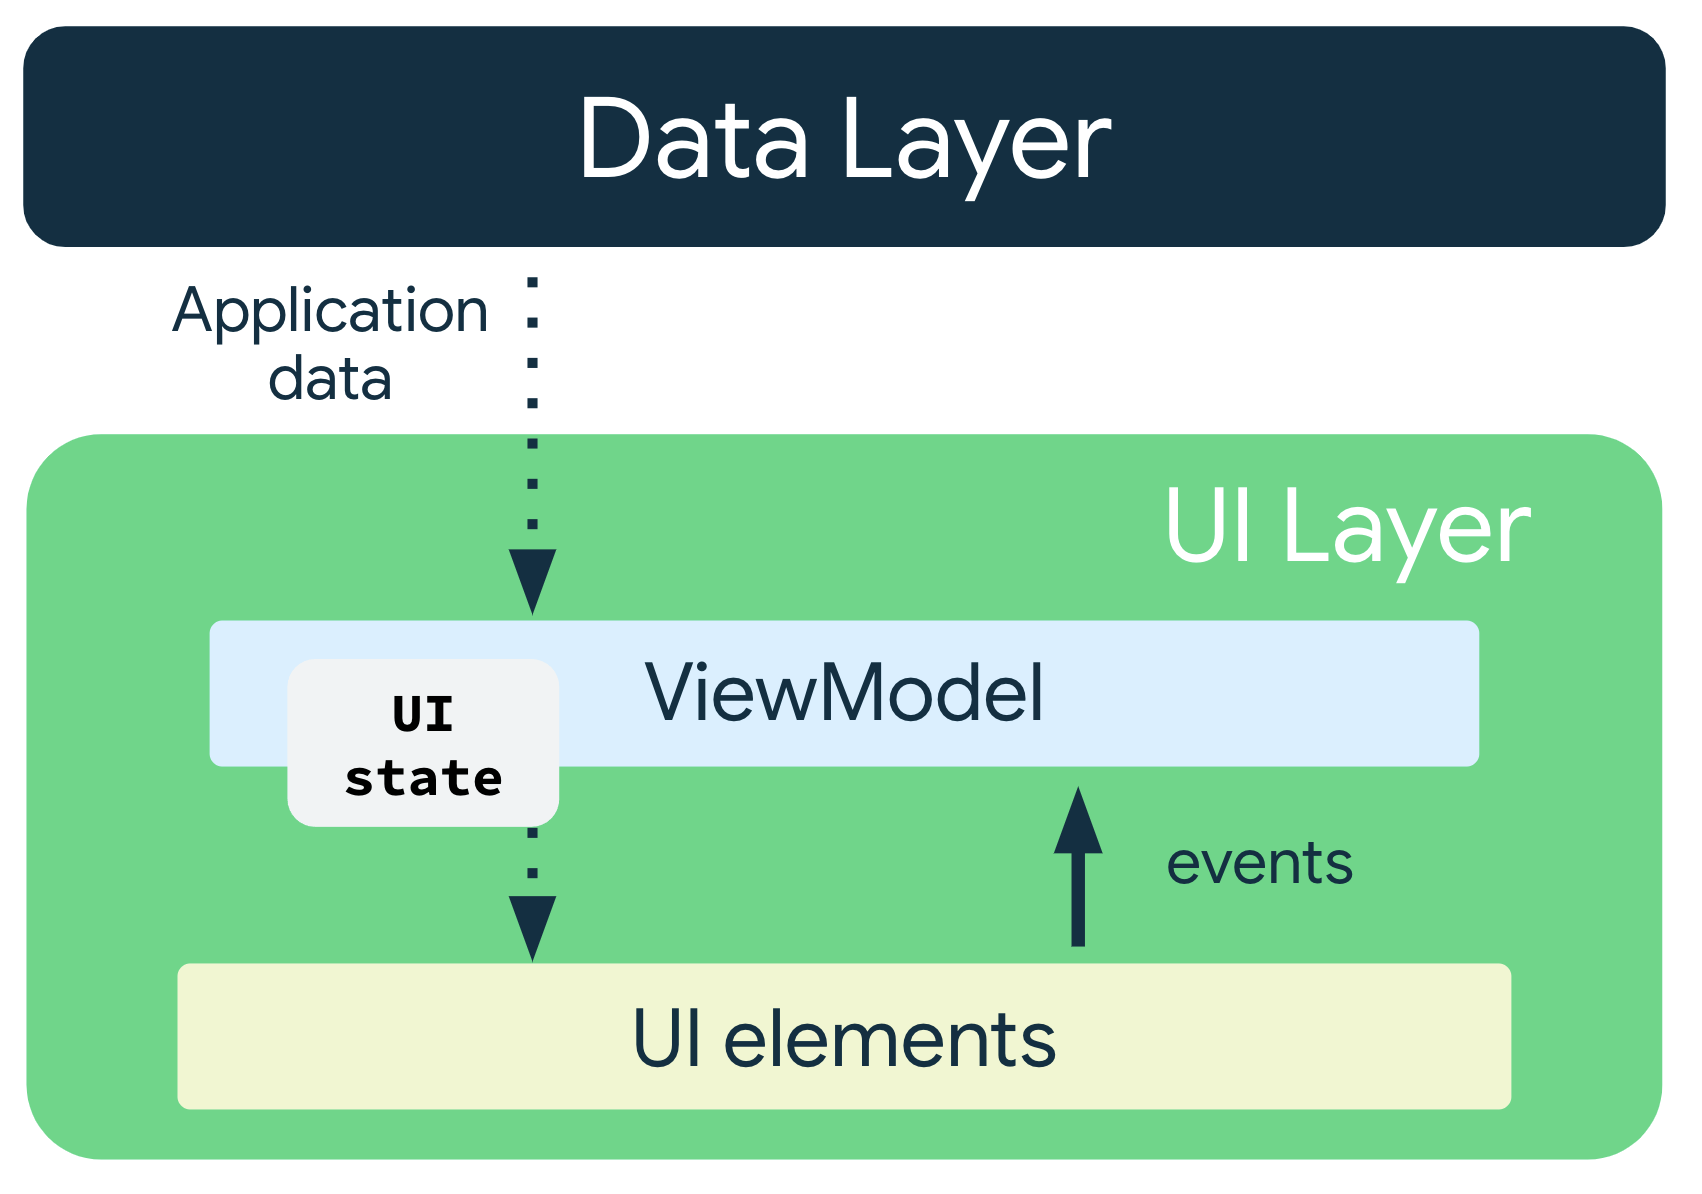 Les données d'application circulent de la couche de données vers ViewModel. L'état de l'interface utilisateur est transmis du ViewModel vers les éléments de l'UI, et les événements sont acheminés des éléments de l'UI vers ViewModel.